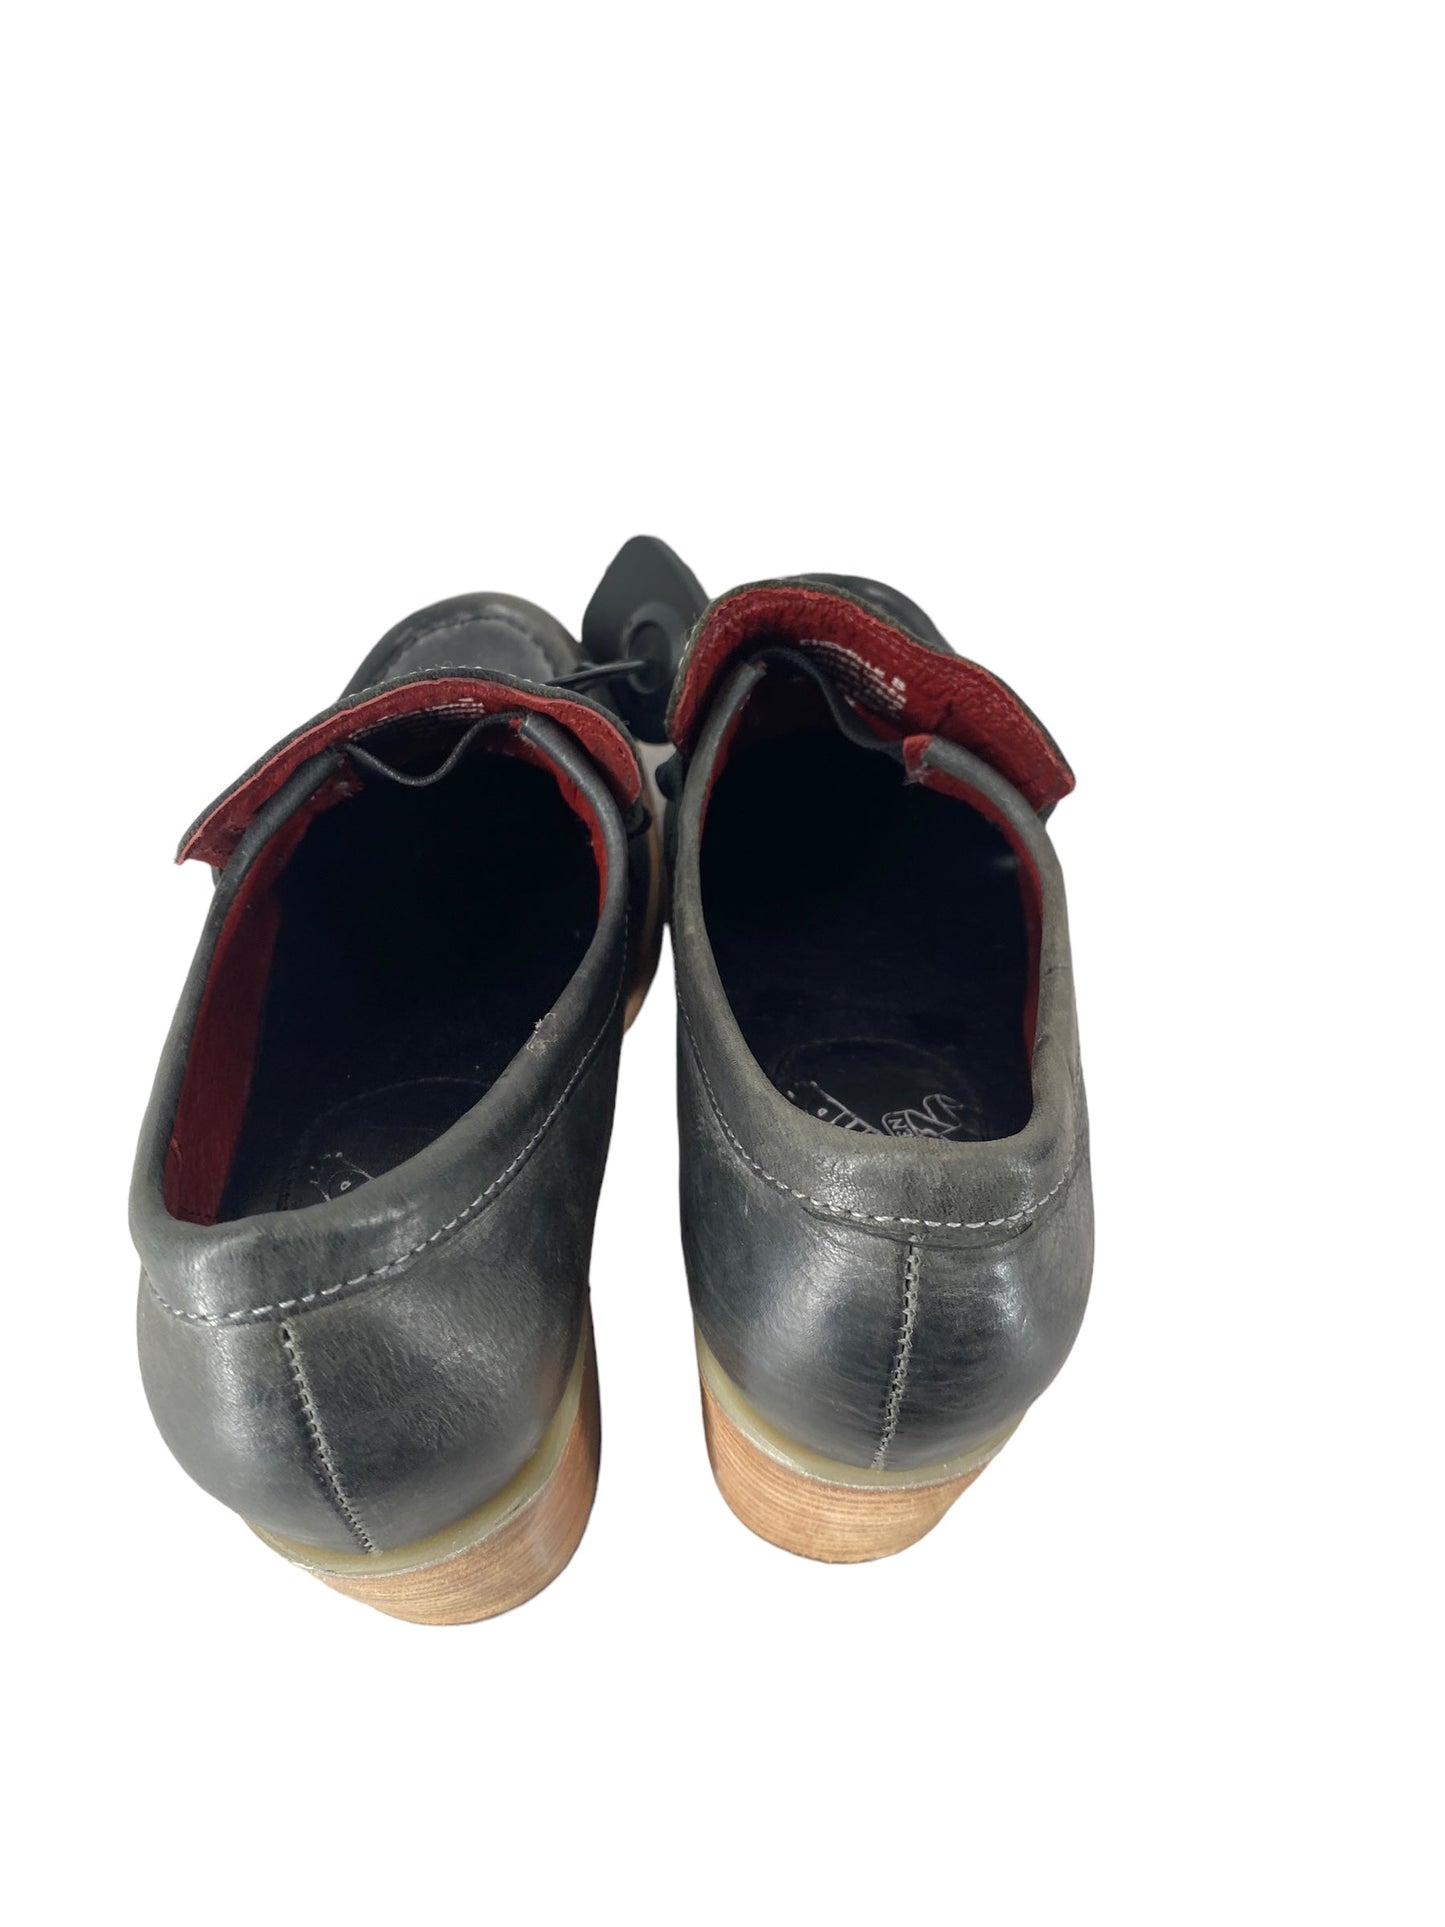 Shoes Heels Block By Freebird  Size: 8